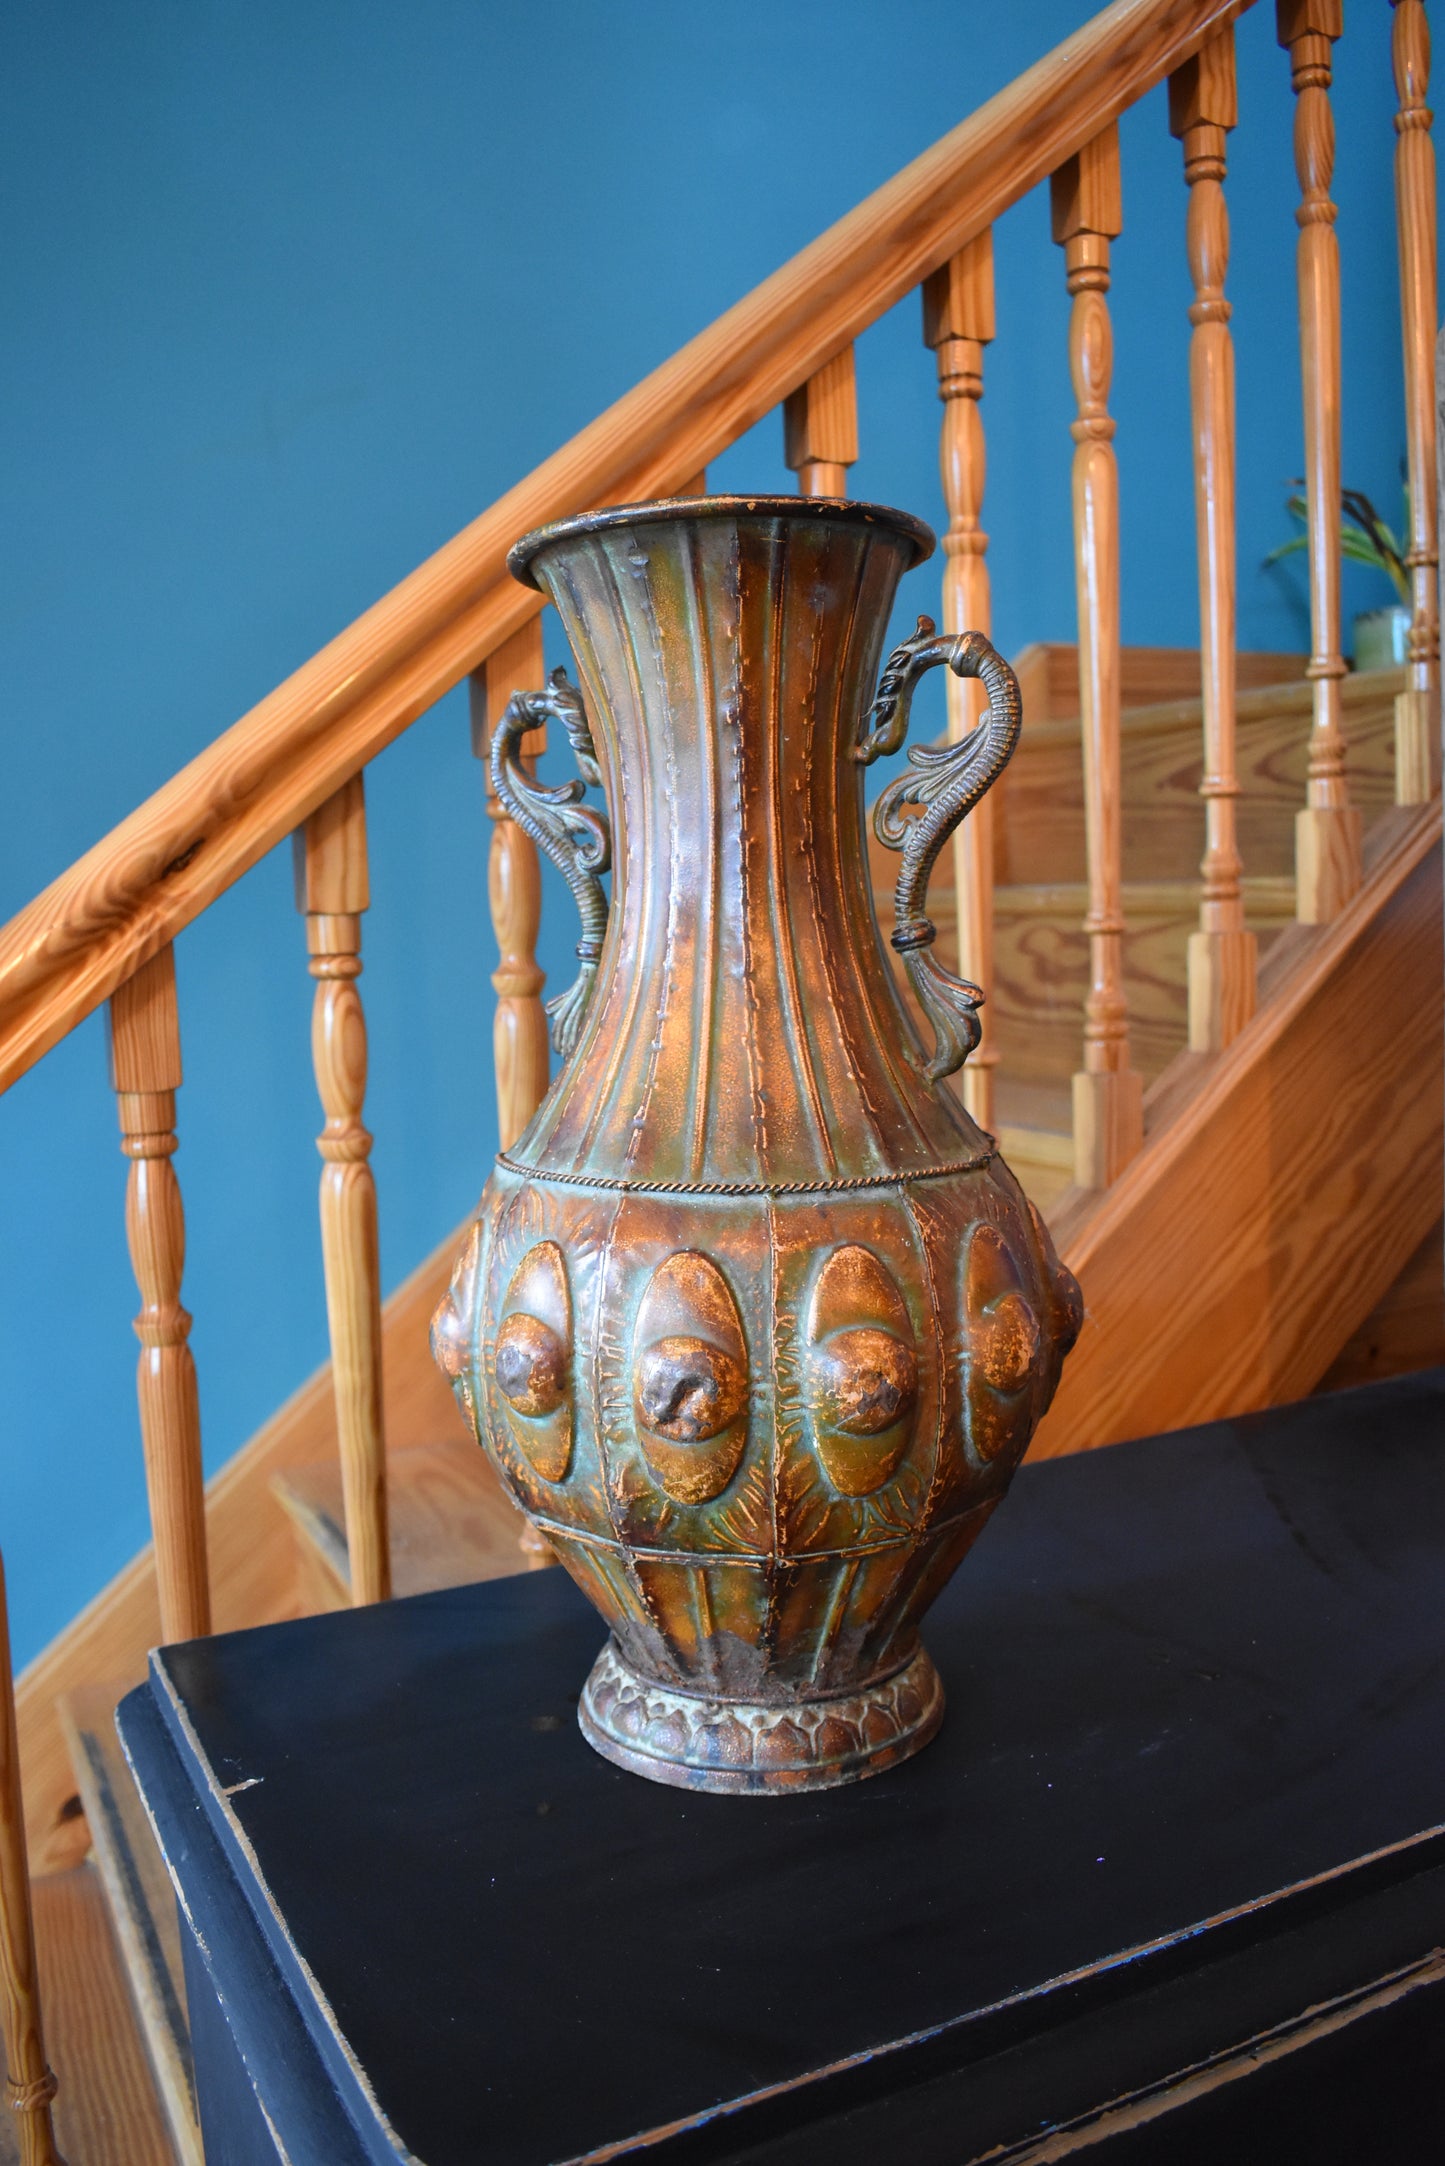 Decorative Vintage Urn